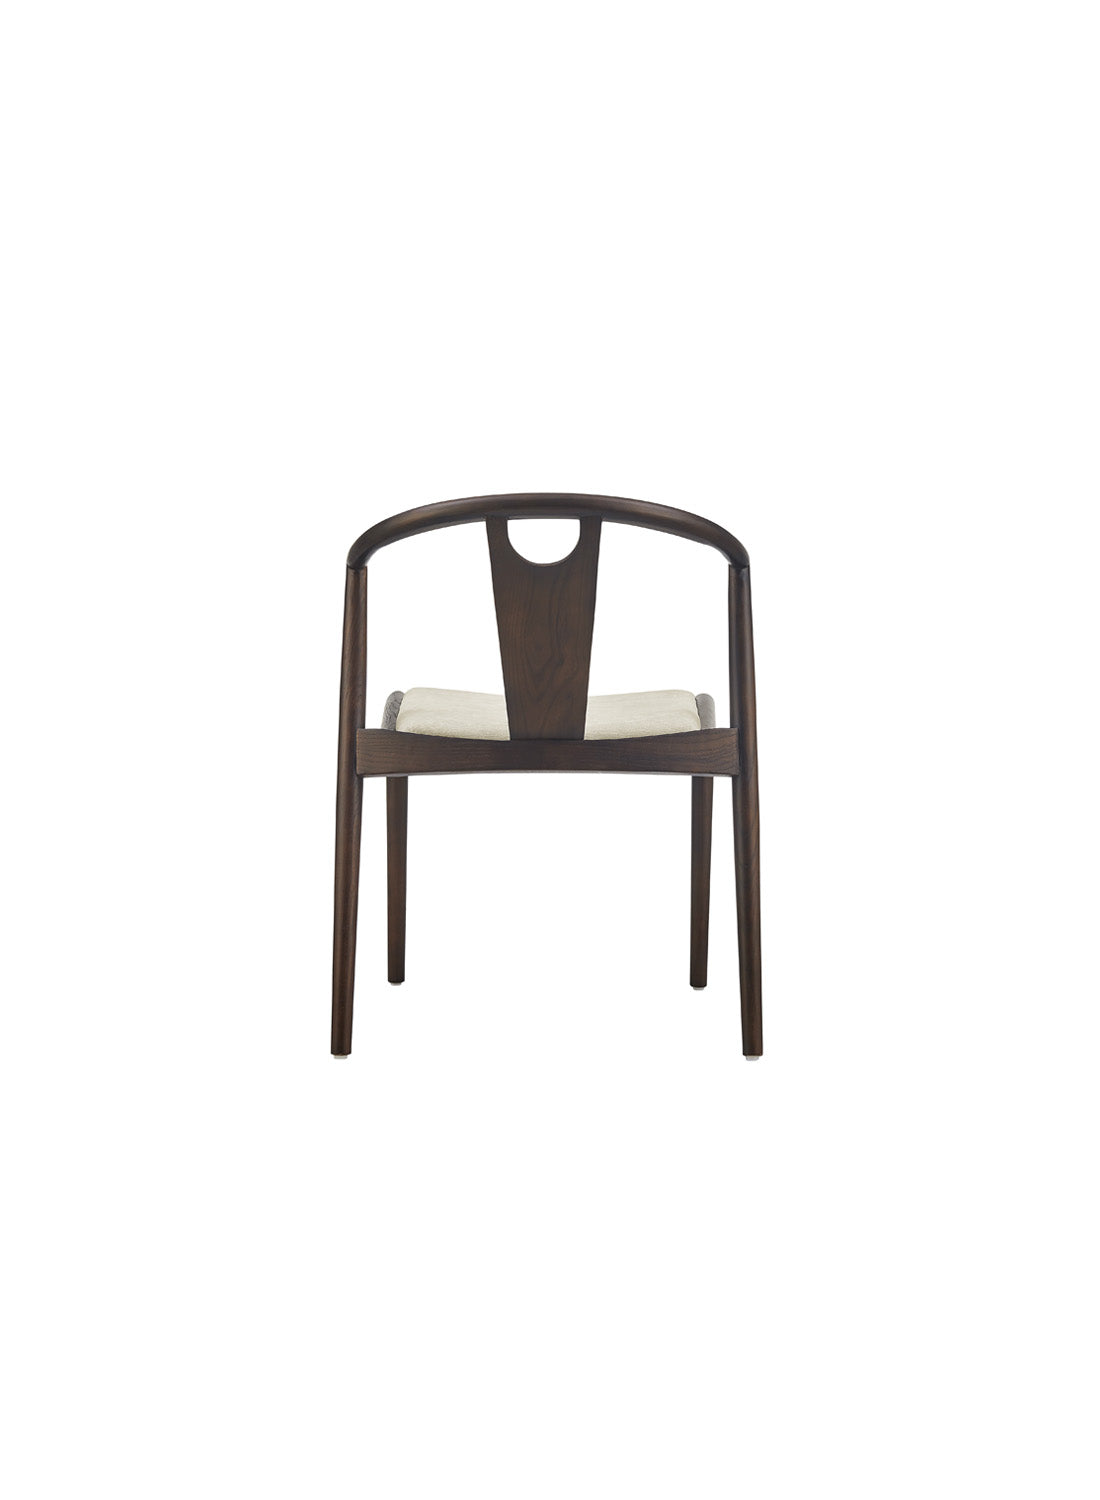 Arcadia Dining Chair, dark walnut